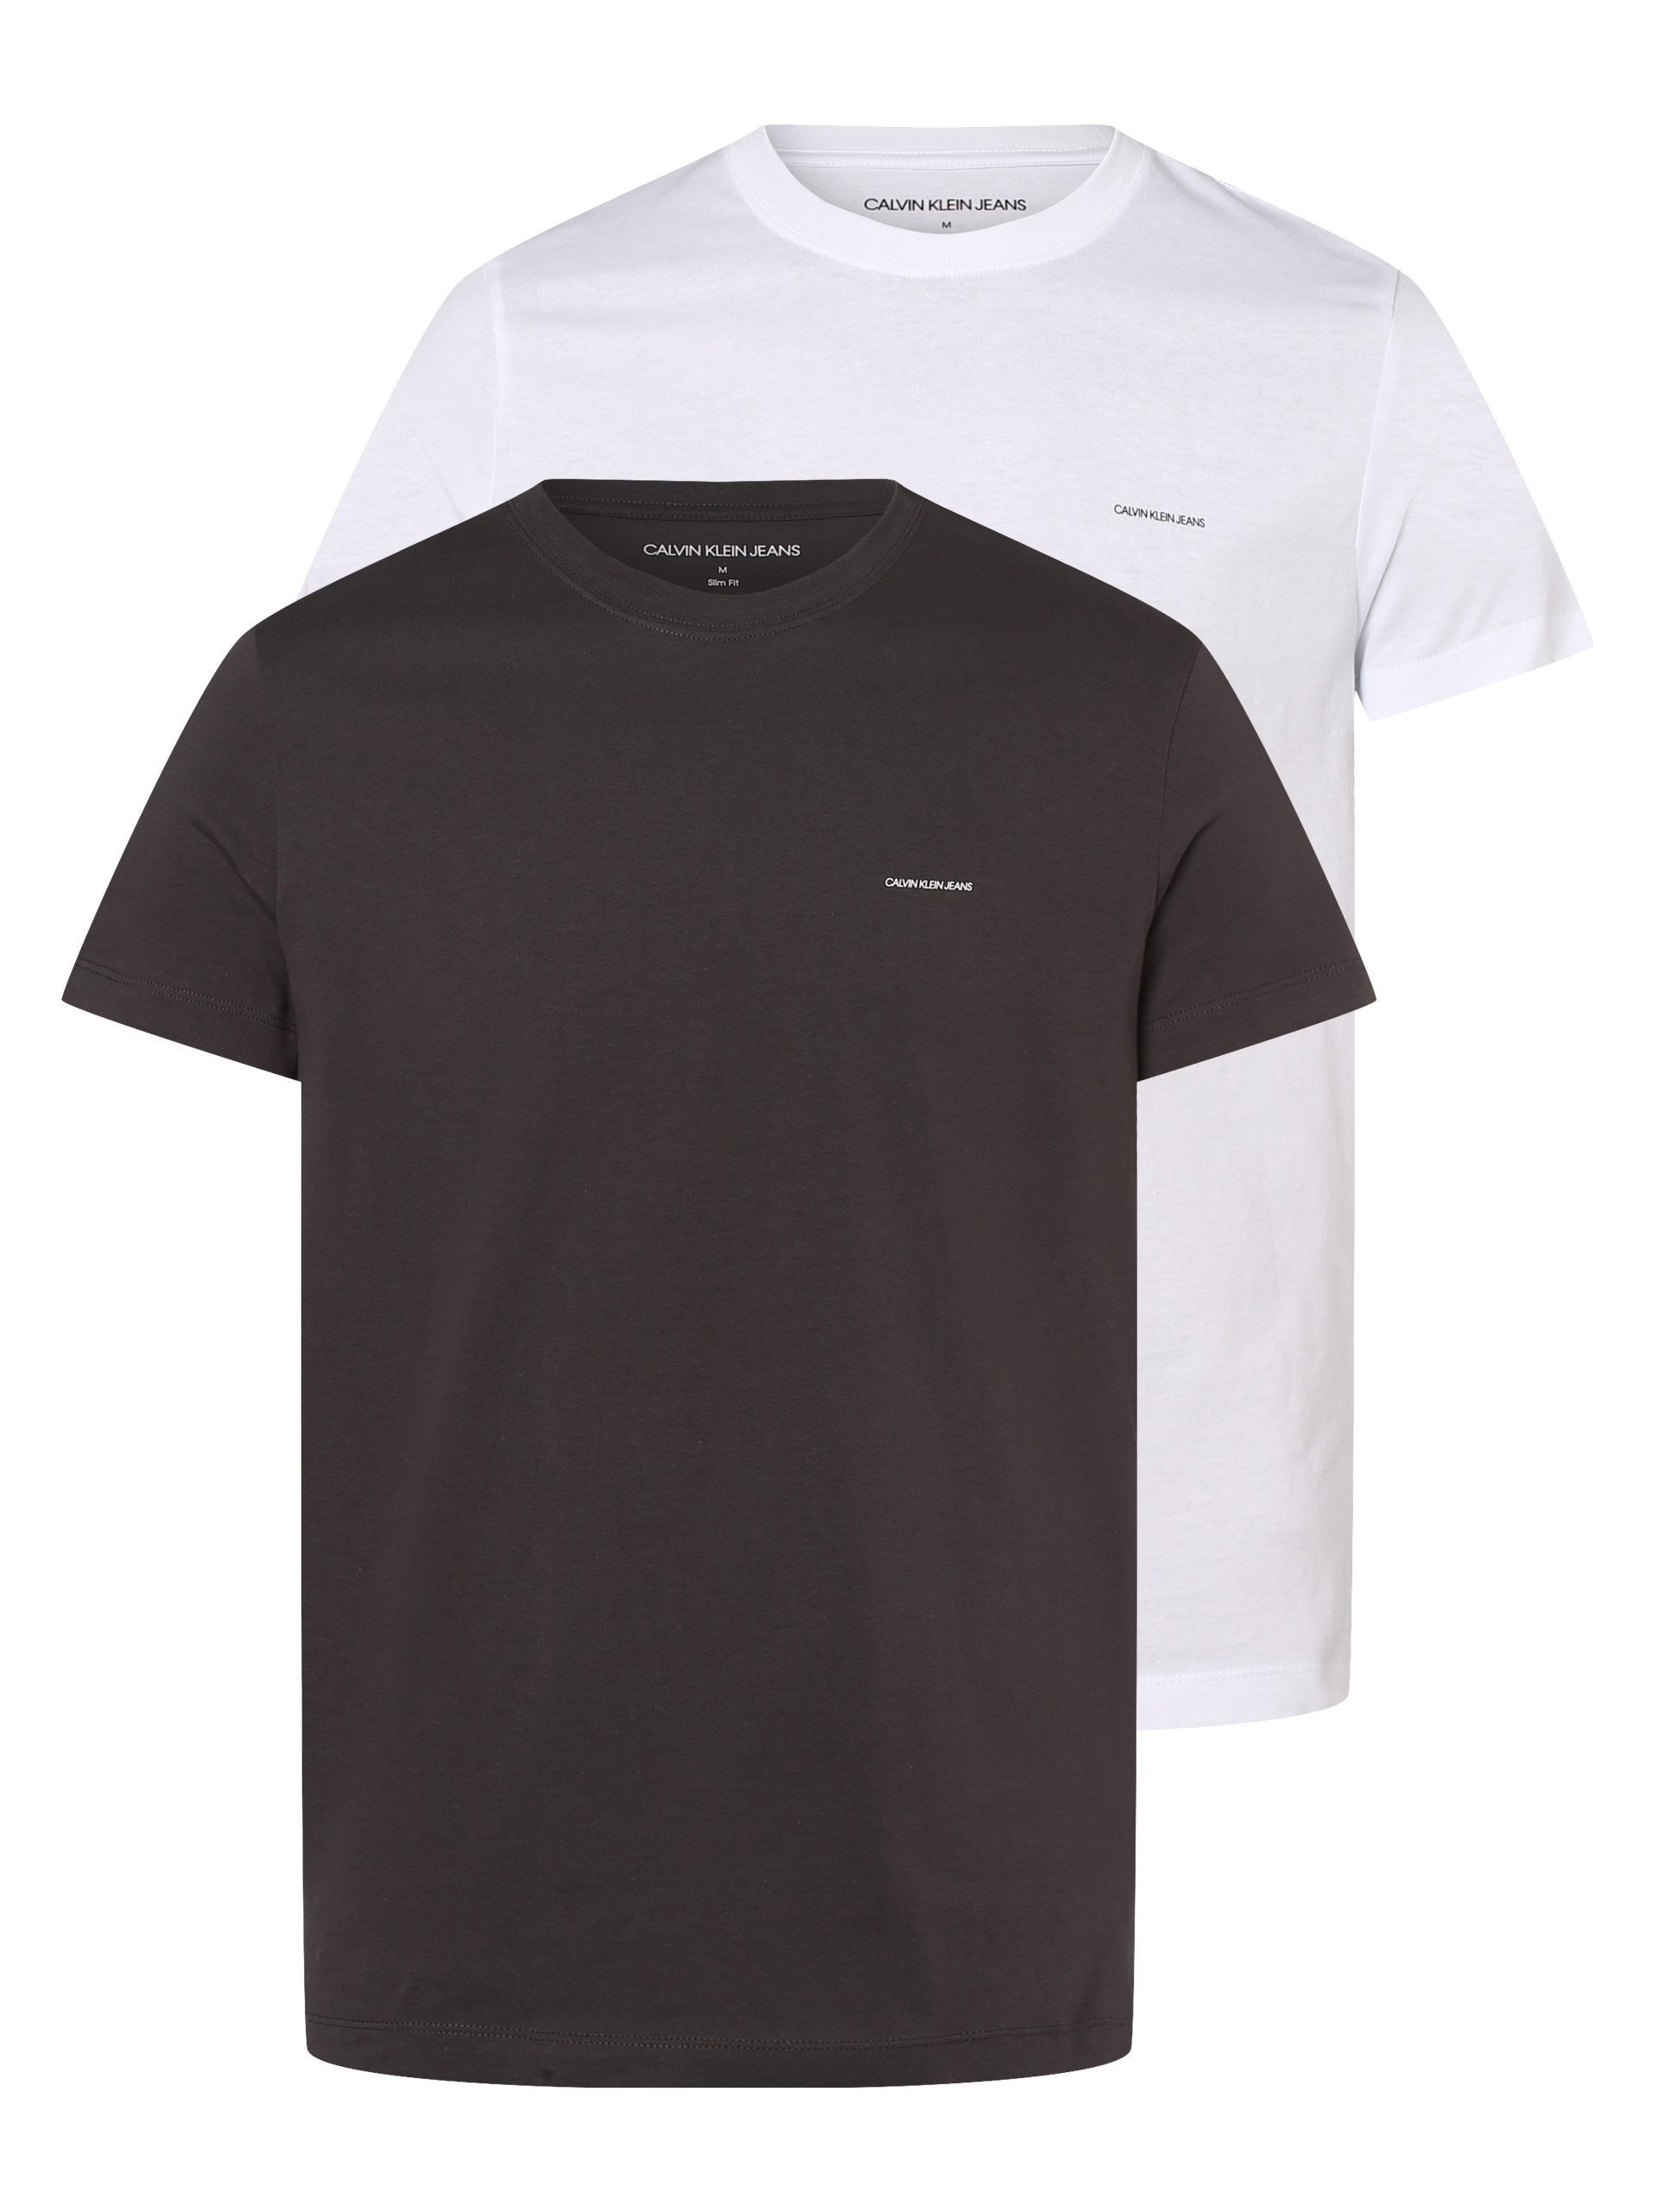 Mężczyźni Koszulki Calvin Klein Jeans Koszulka w kolorze Antracytowy, Białym 